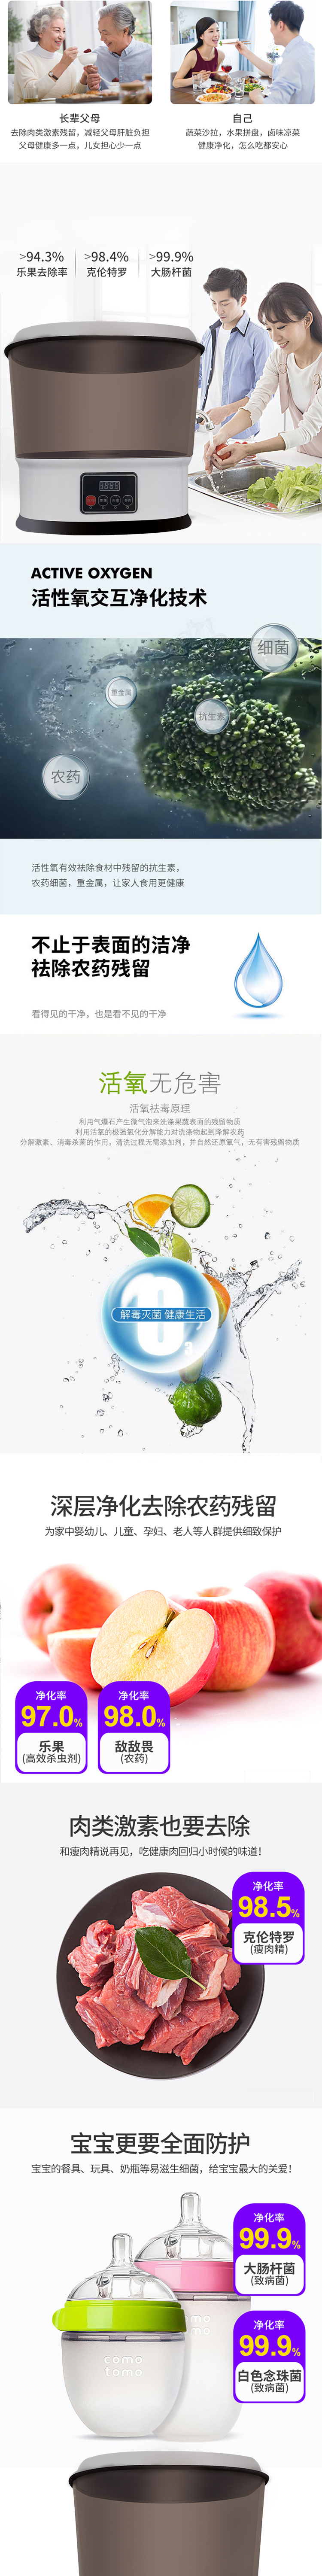 果蔬消毒机   按键操作  大容量可视水箱  活性氧净化   深圳市源头厂家    支持一件代发